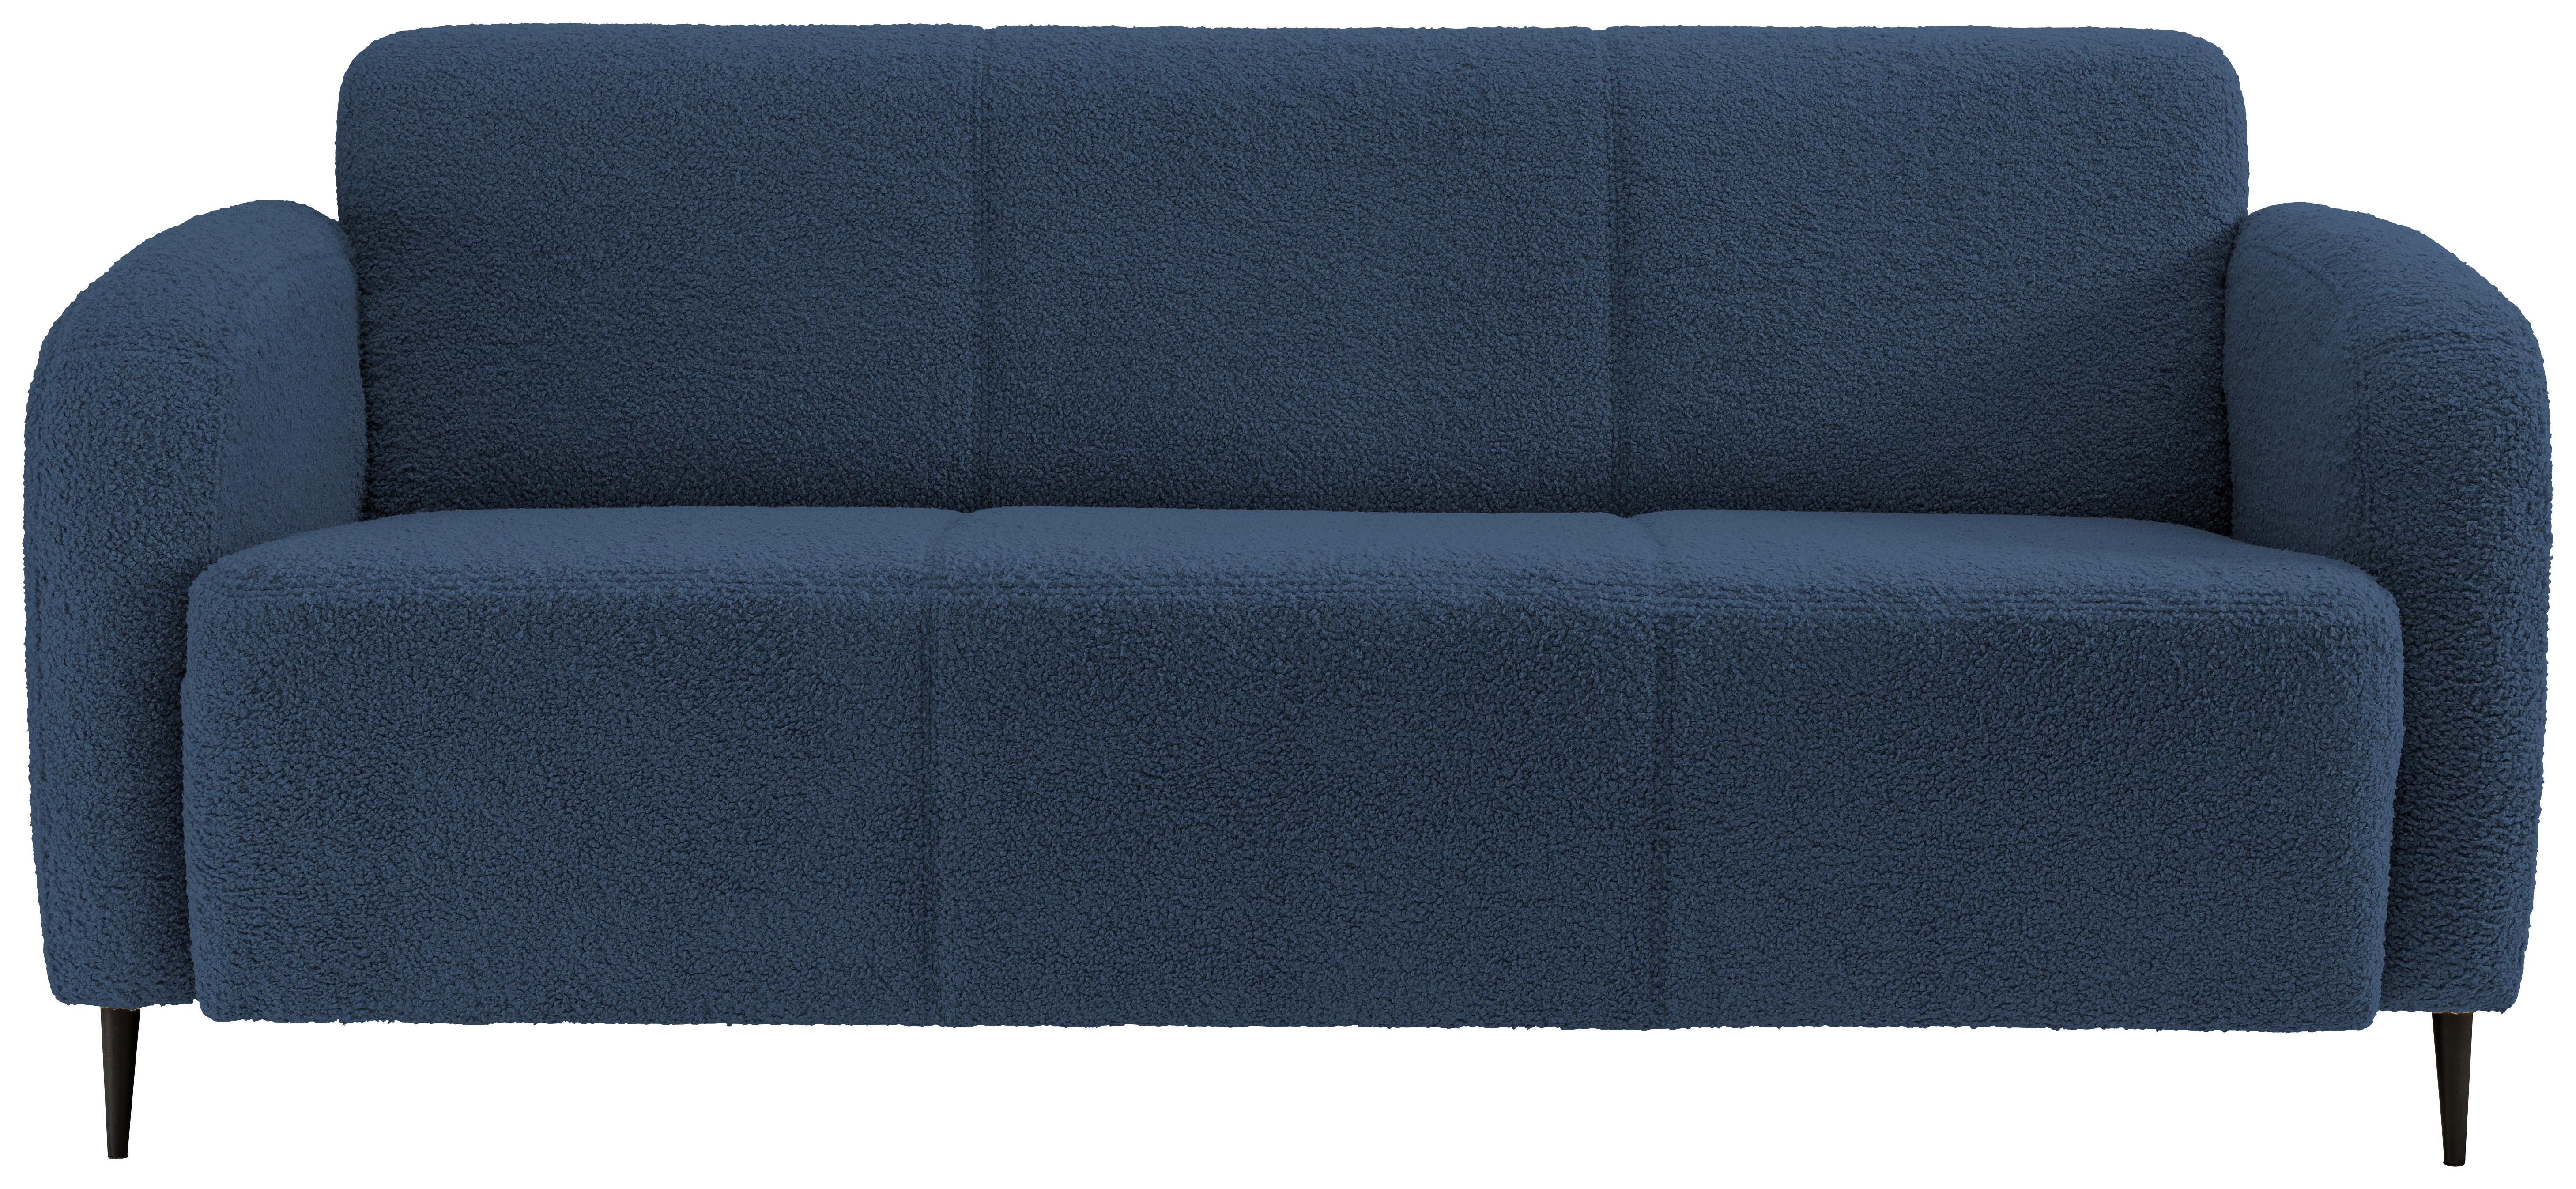 3-Sitzer-Sofa Marone Blau Teddystoff